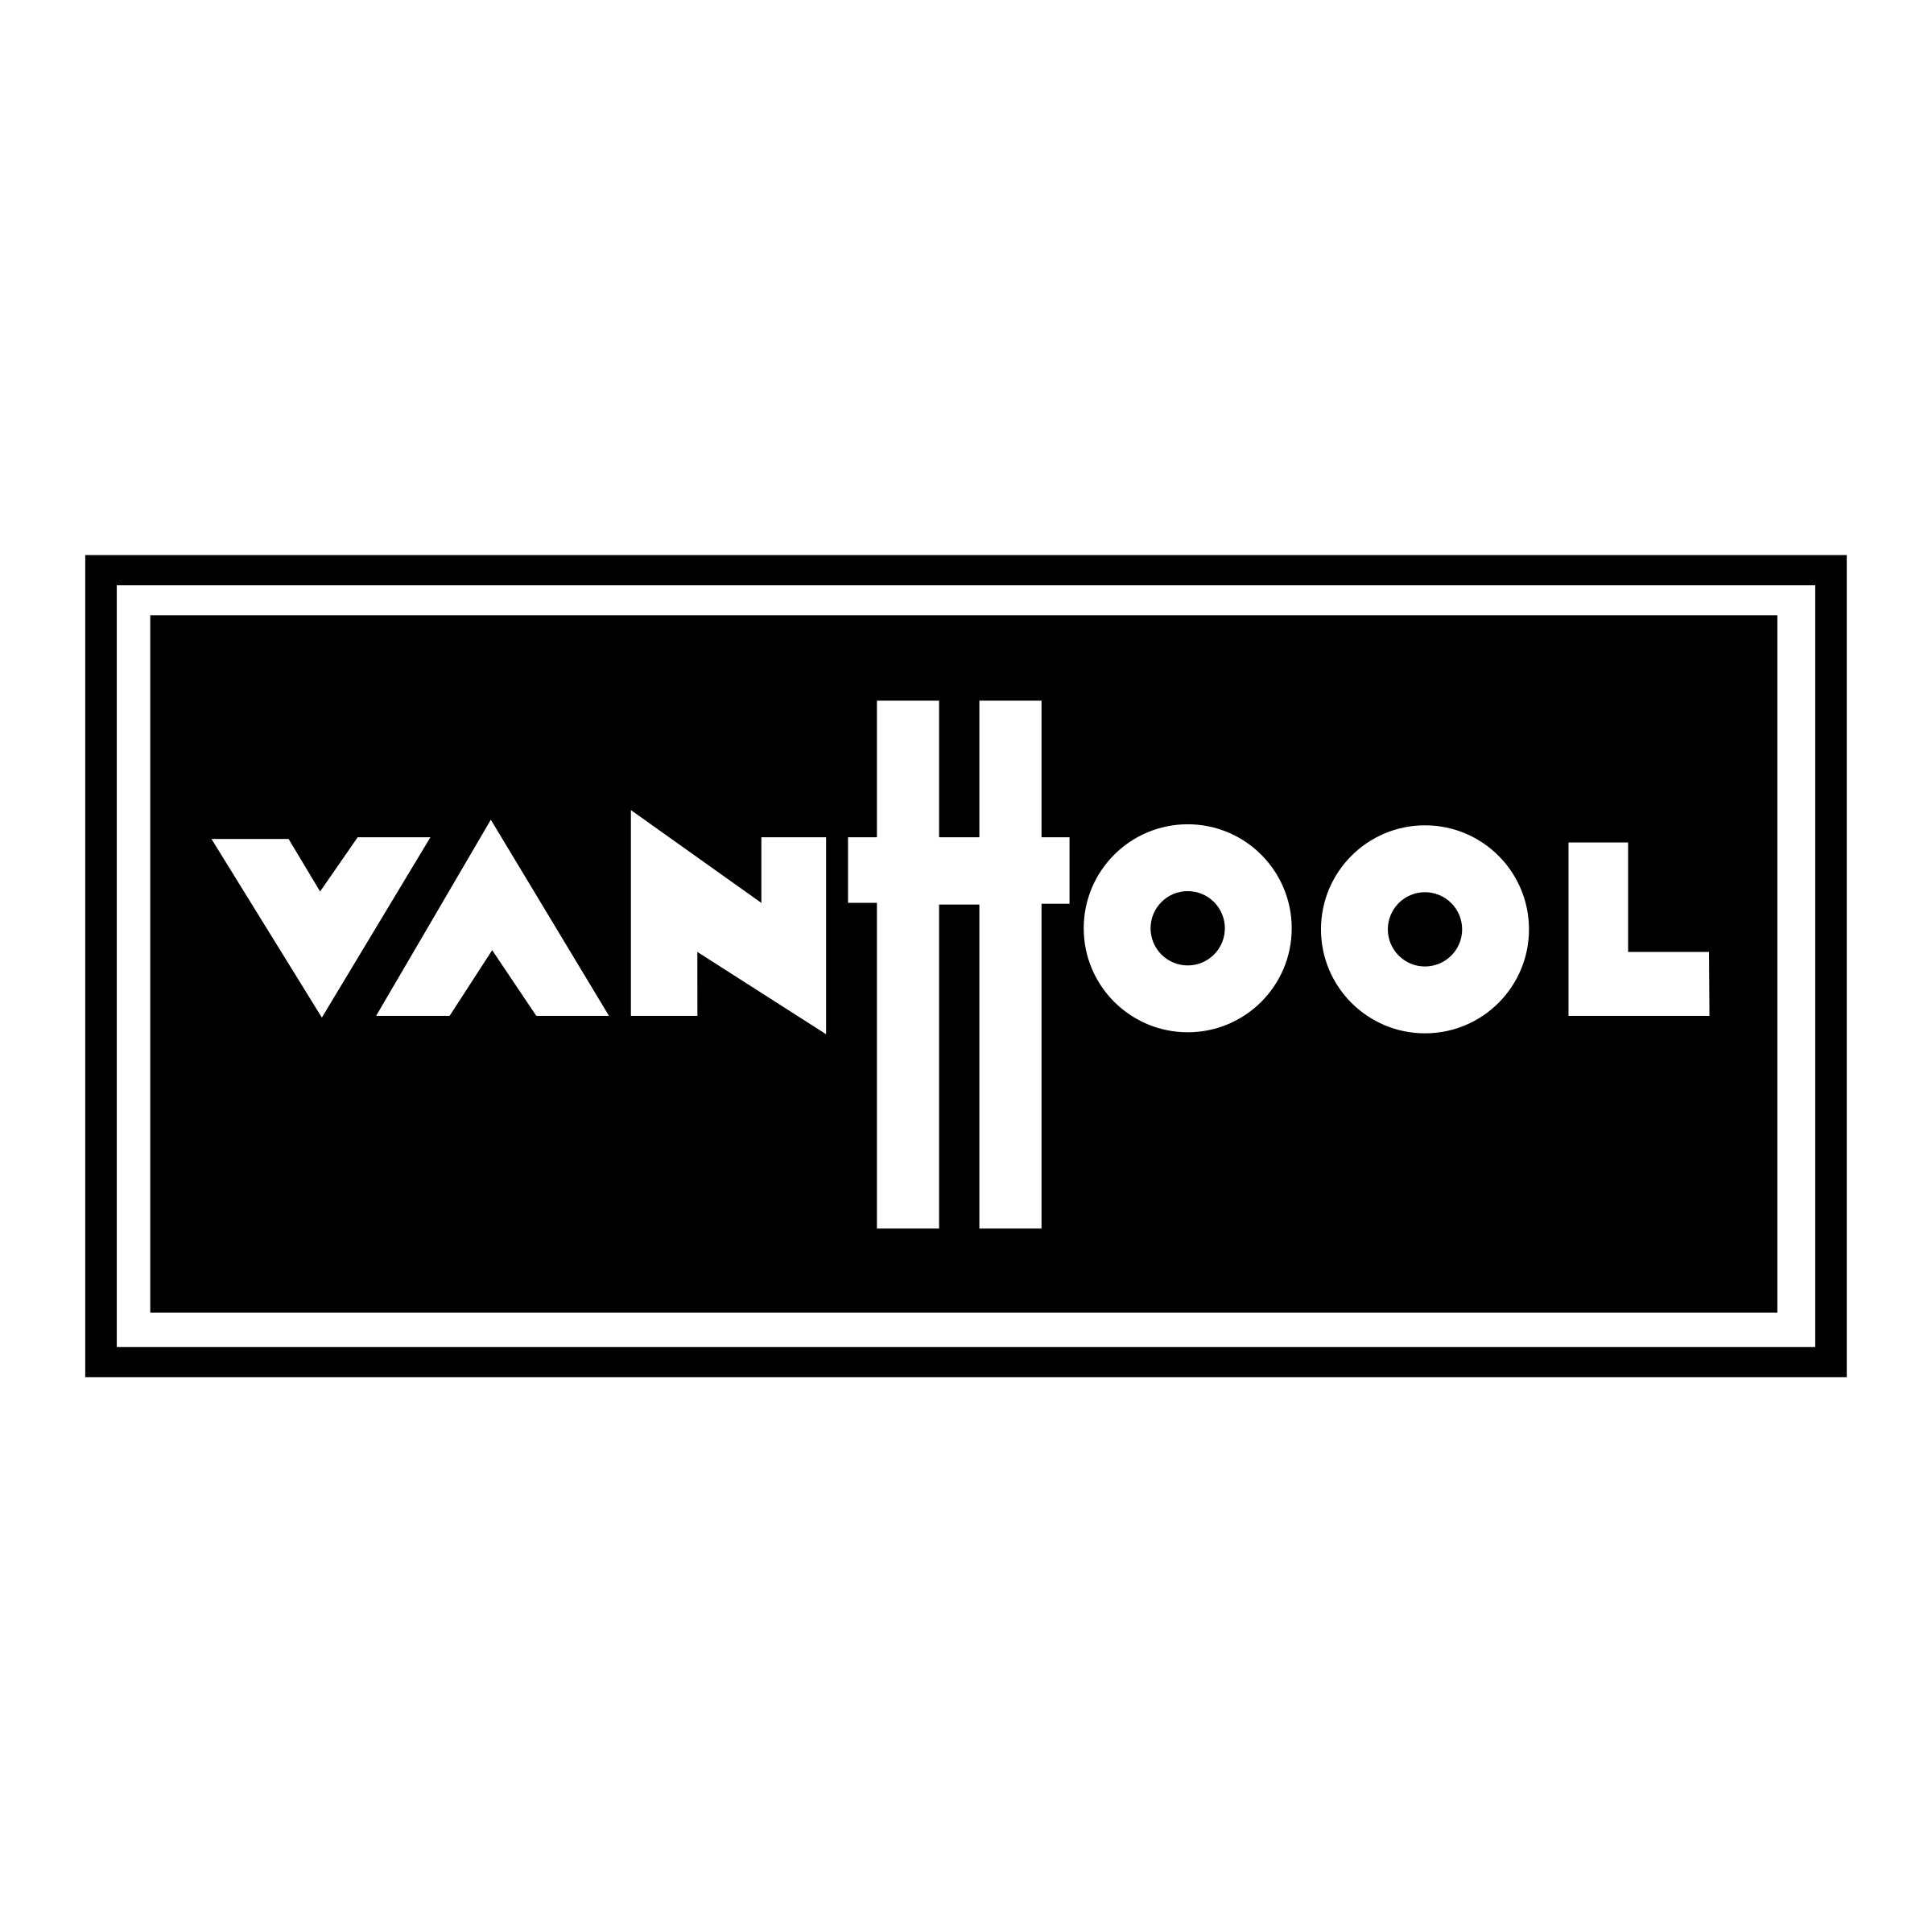 https://legacyluxurytransportation.com/wp-content/uploads/2022/06/vanhool-logo-png-transparent.png